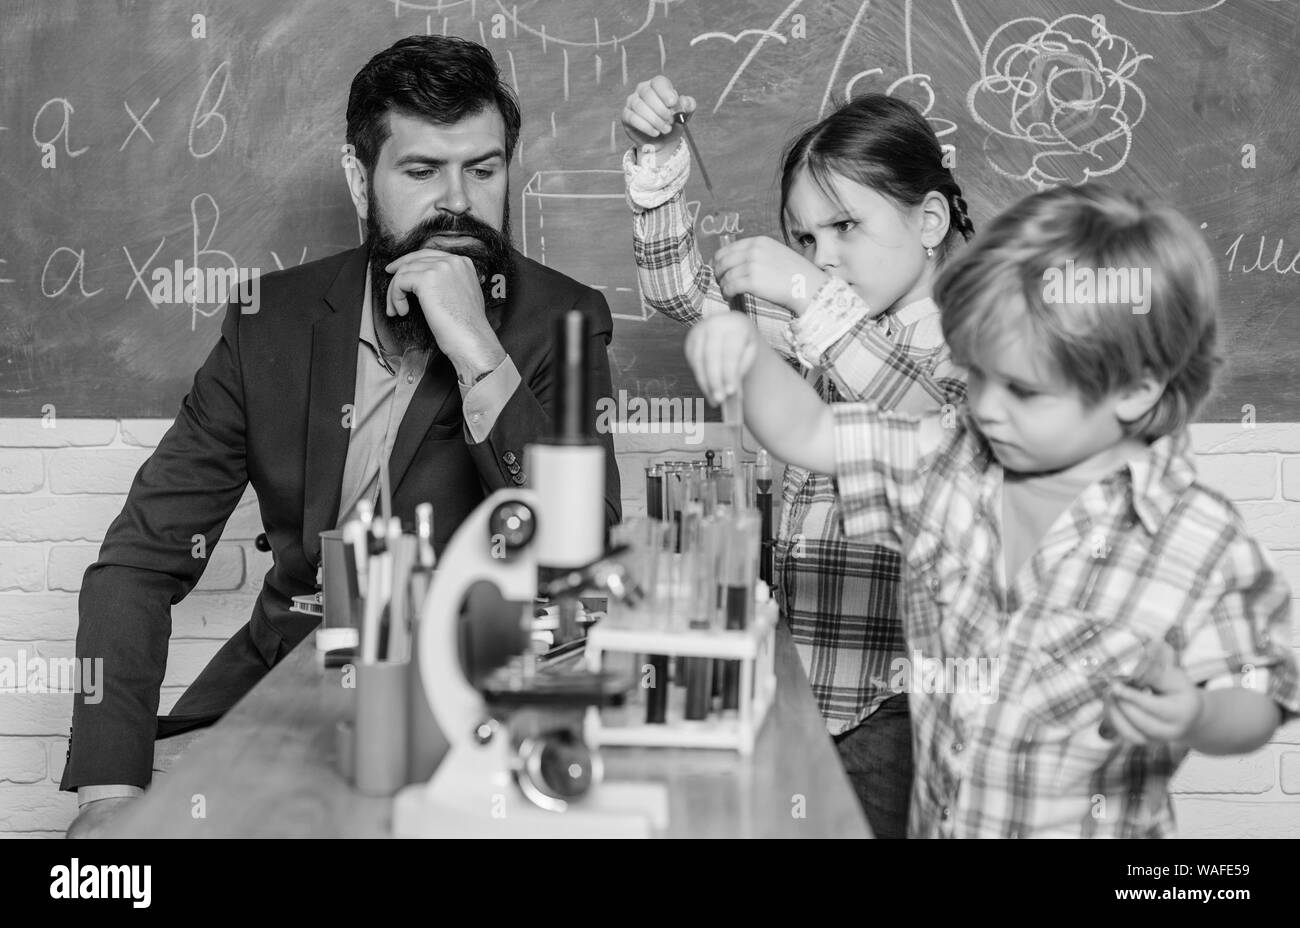 Mikroskop optisches Instrument an der Wissenschaft Klassenzimmer. zurück zu Schule. glückliche Kinder Lehrer. Mit Mikroskop in der Schule Lektion lernen. Die frühe Entwicklung von Kindern. Freundlich Kinder im Labor Stockfoto